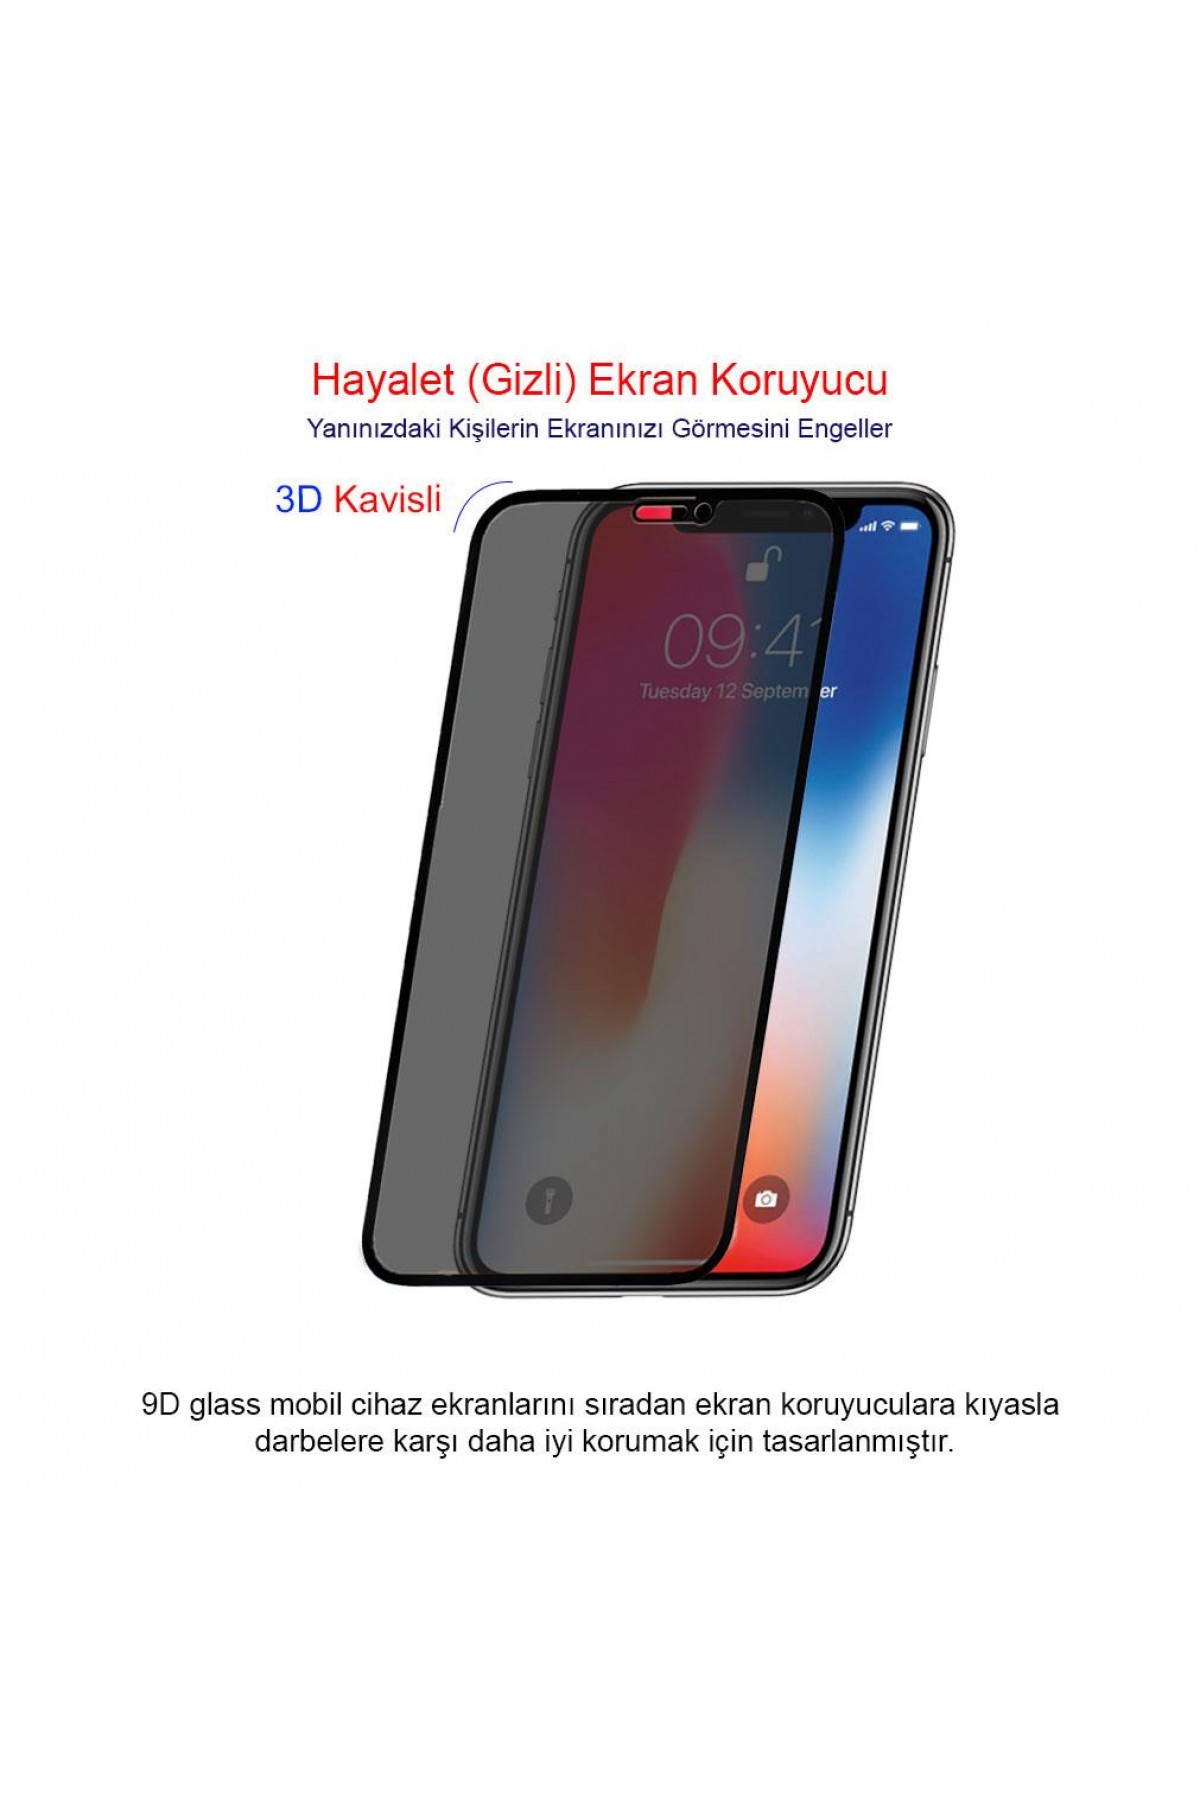 Iphone X / XS Ekran Koruyucu Gizli Hayalet Cam Tam Kaplama